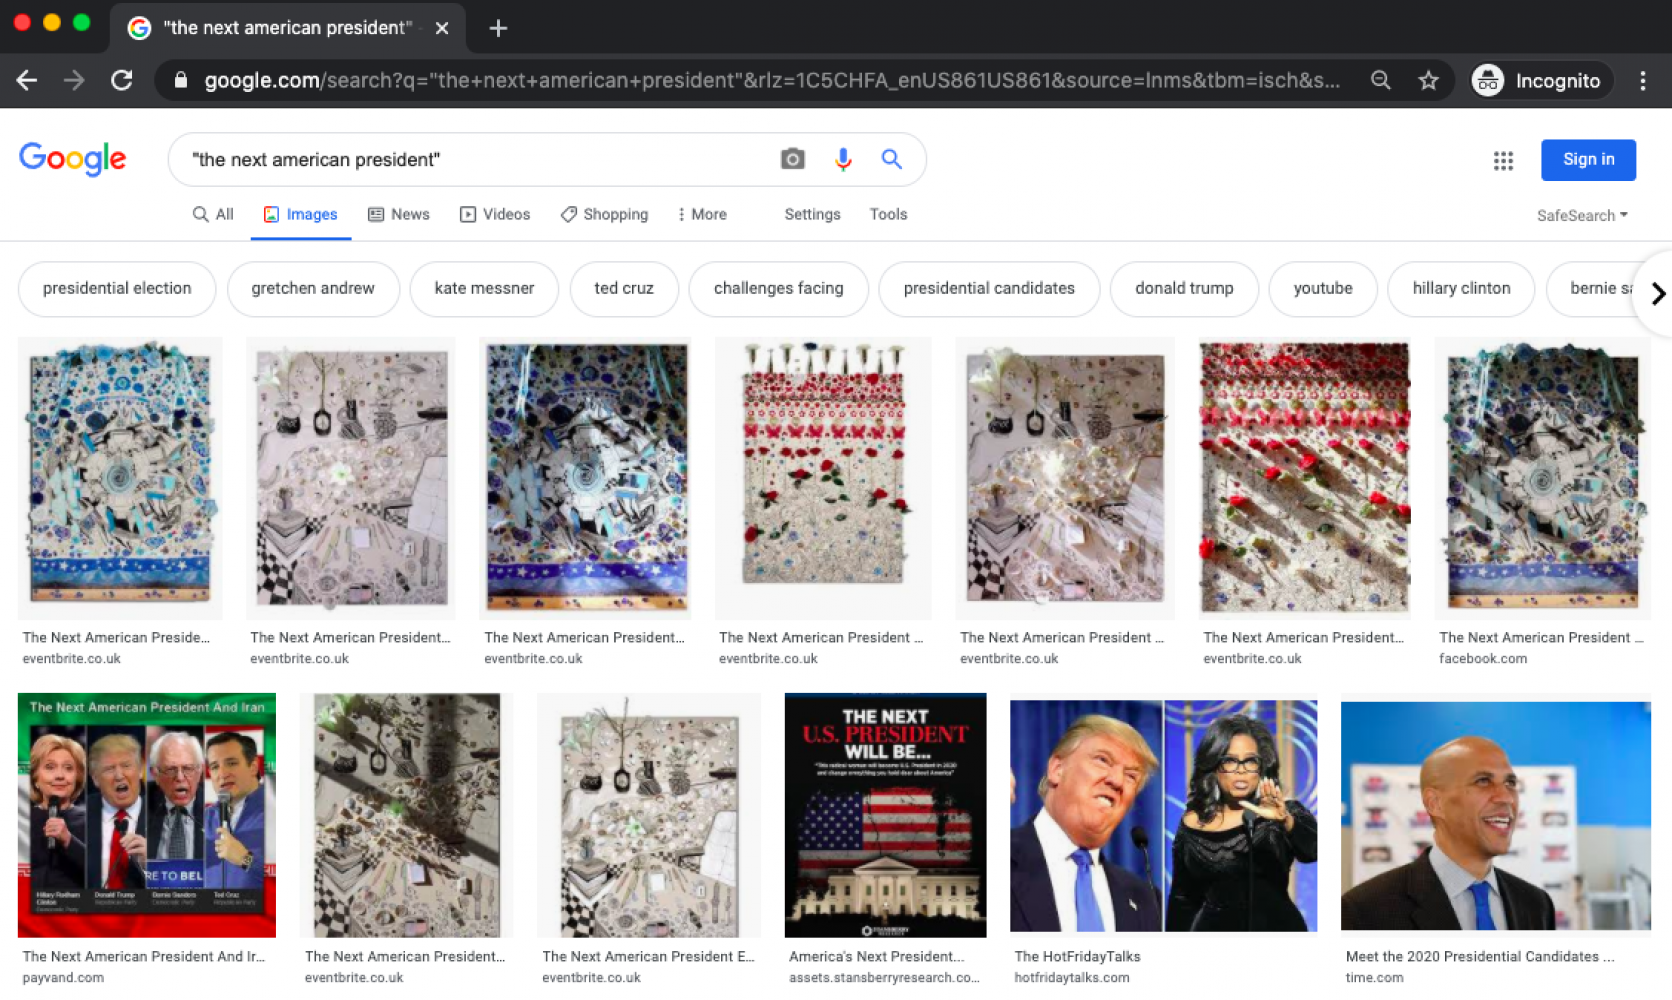 Suchergebnisse der Suche "next american president" bei Google